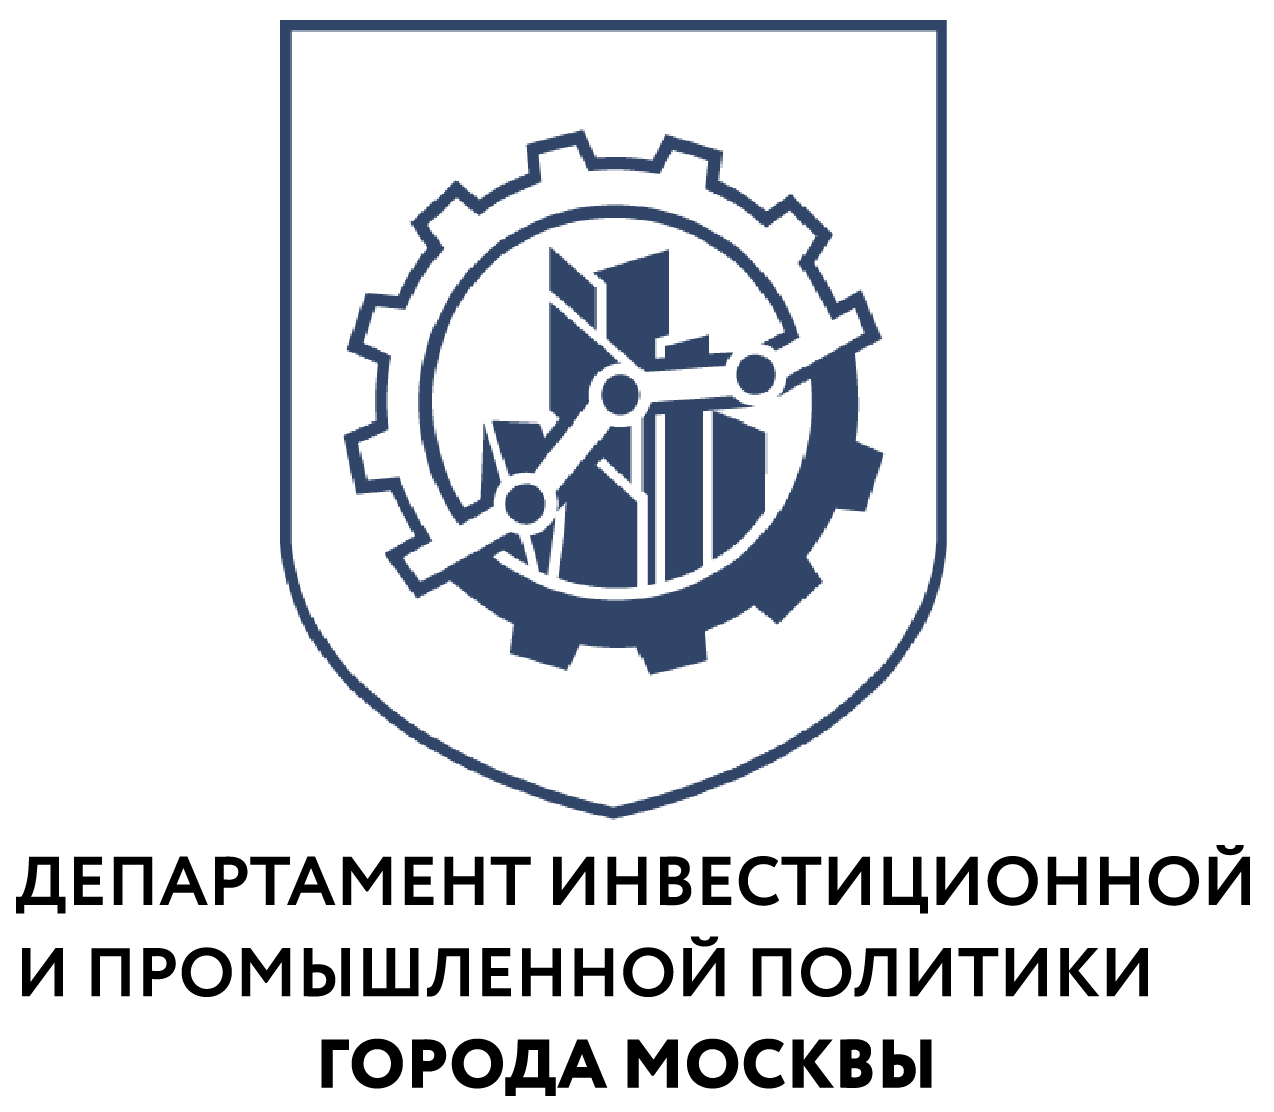 Московские предприятия увеличивают производство промышленного оборудования - фото 1